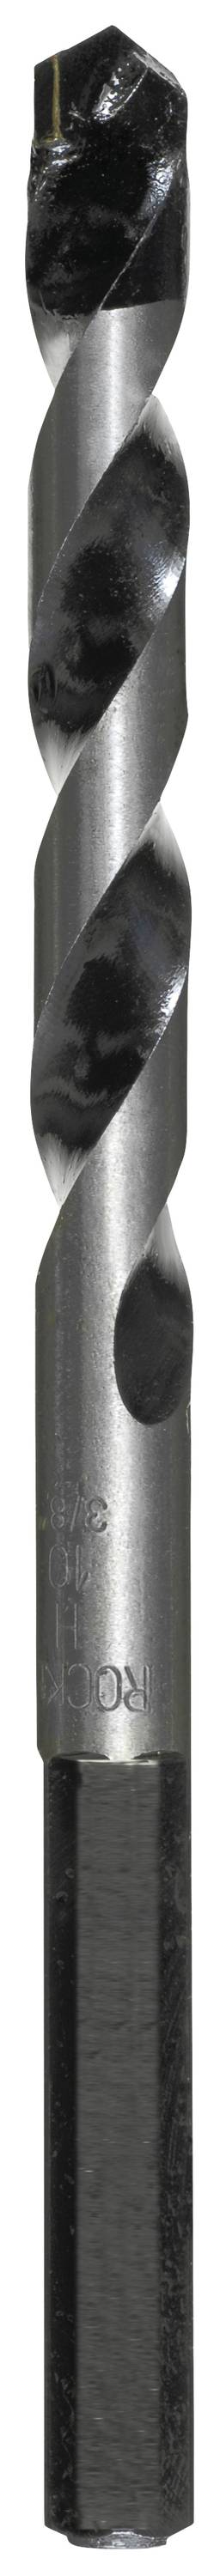 KWB 050670 Hartmetall Beton-Spiralbohrer 7 mm Gesamtlänge 120 mm Zylinderschaft 1 Stück (050670)